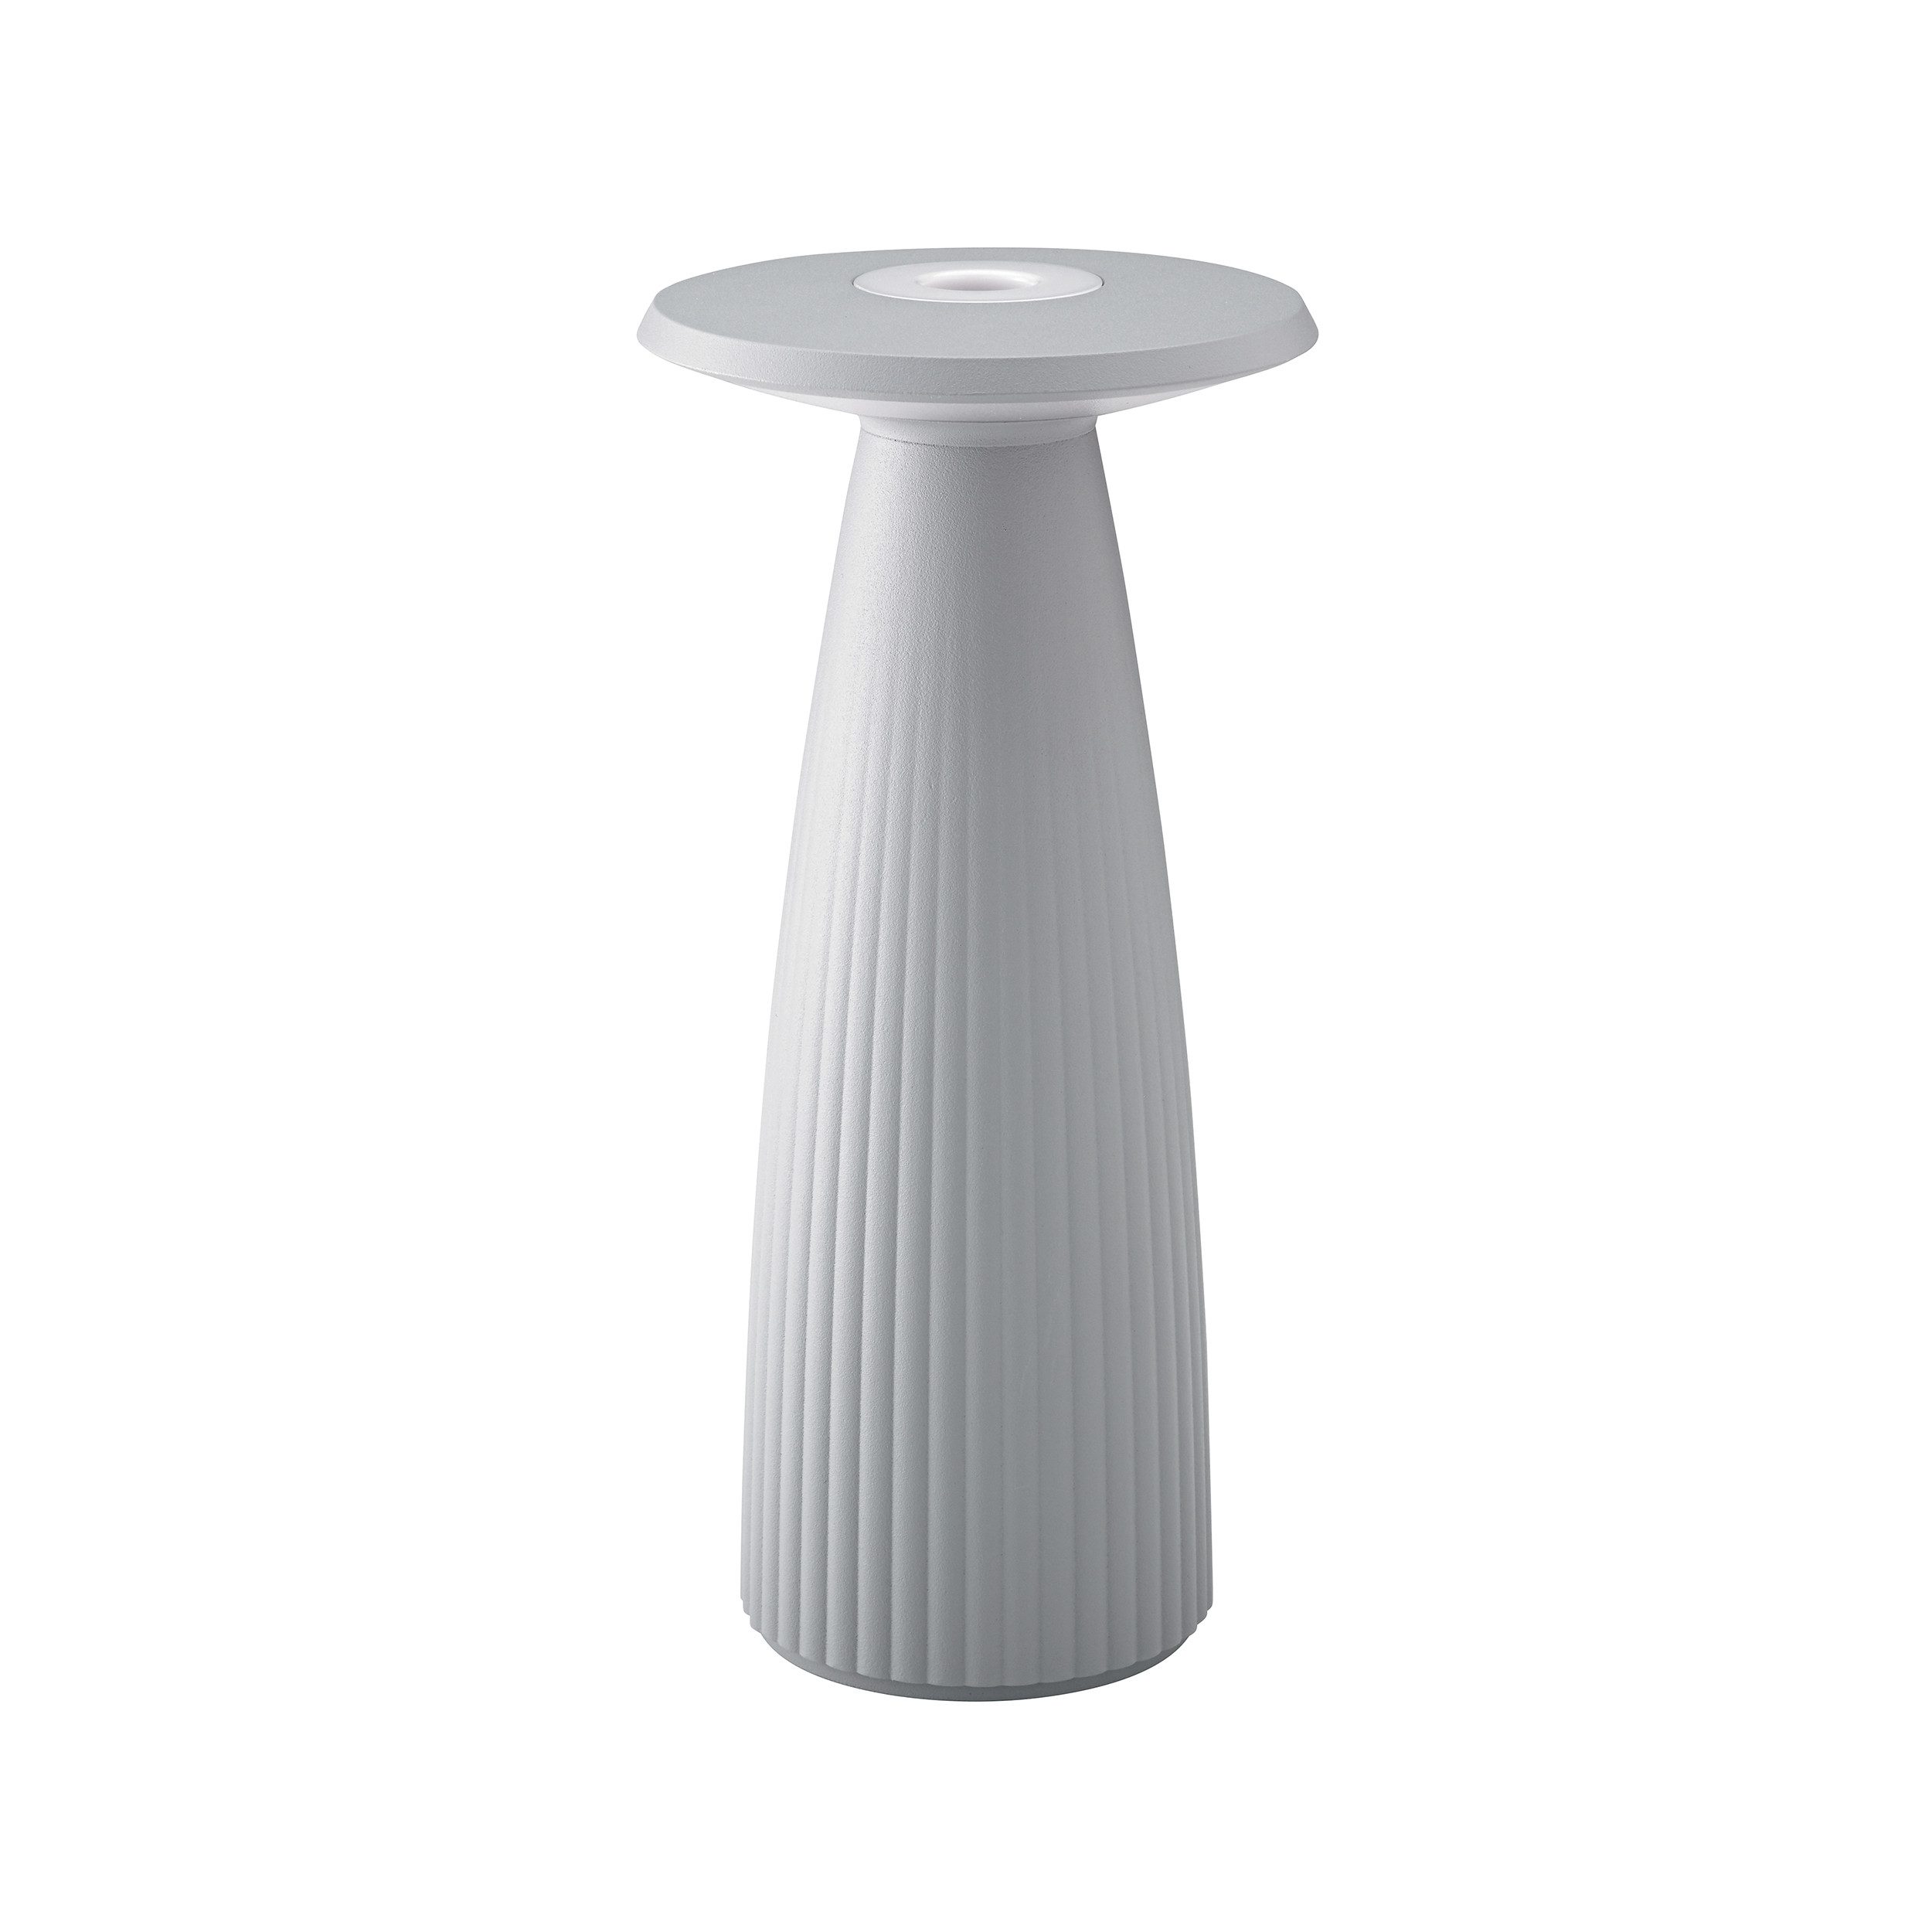 SIGOR LED Tischleuchte Nuflair, Stilvolle 2 in 1 Akku-Tischlampe, LED fest integriert, Kombi aus Vase & Lampe, moderne Tischdekoration, 24x11.5x11.5 cm